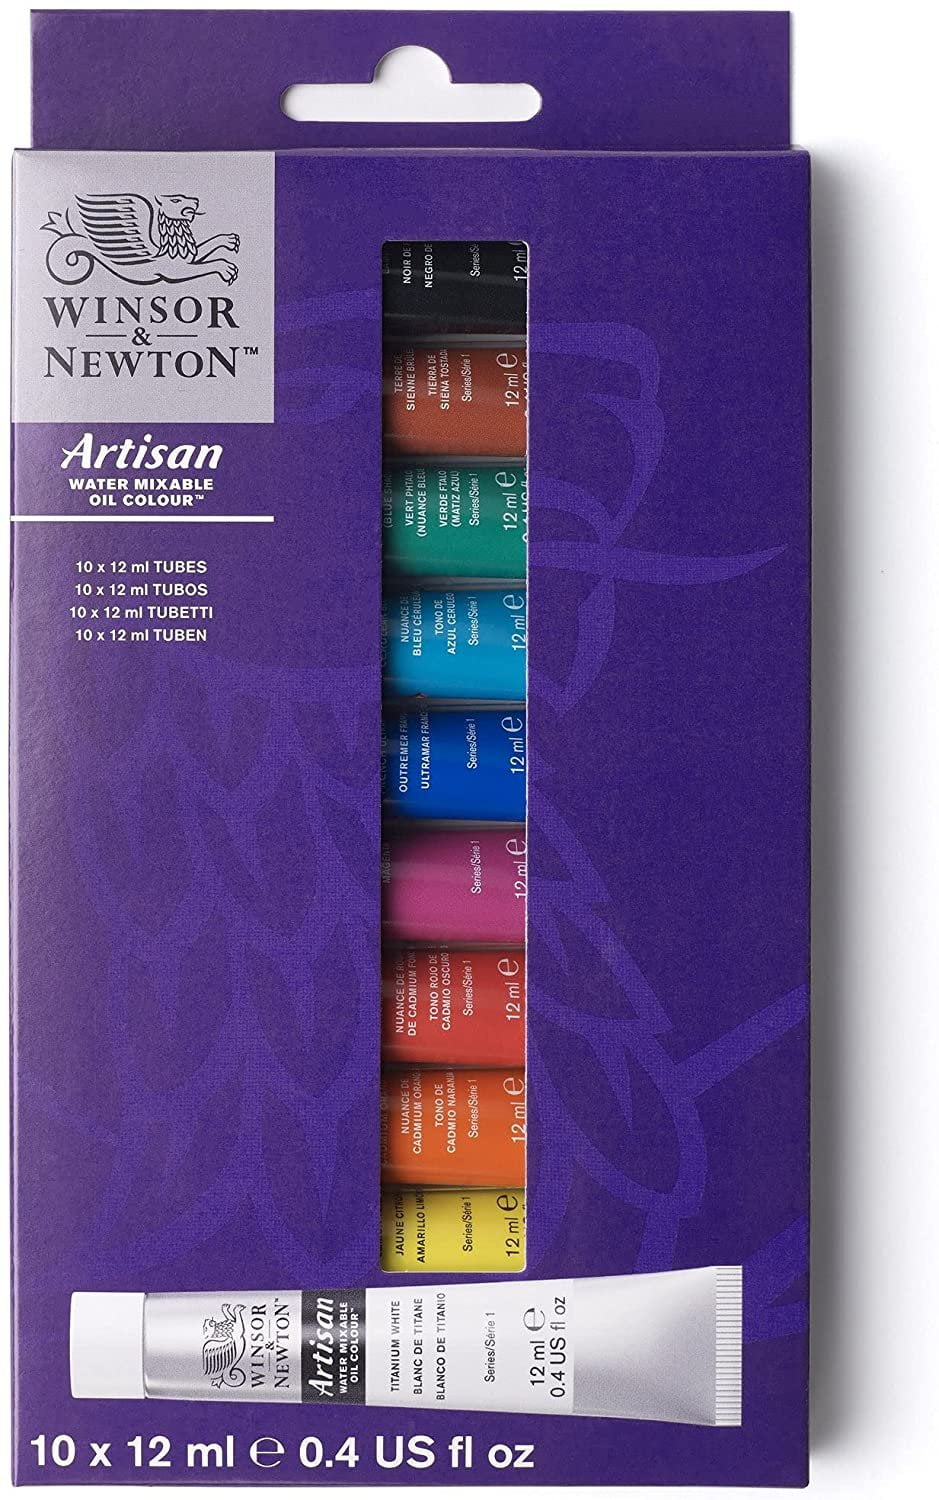 Winsor & Newton Artisan Water Mixable Oil Colour Studio Set 